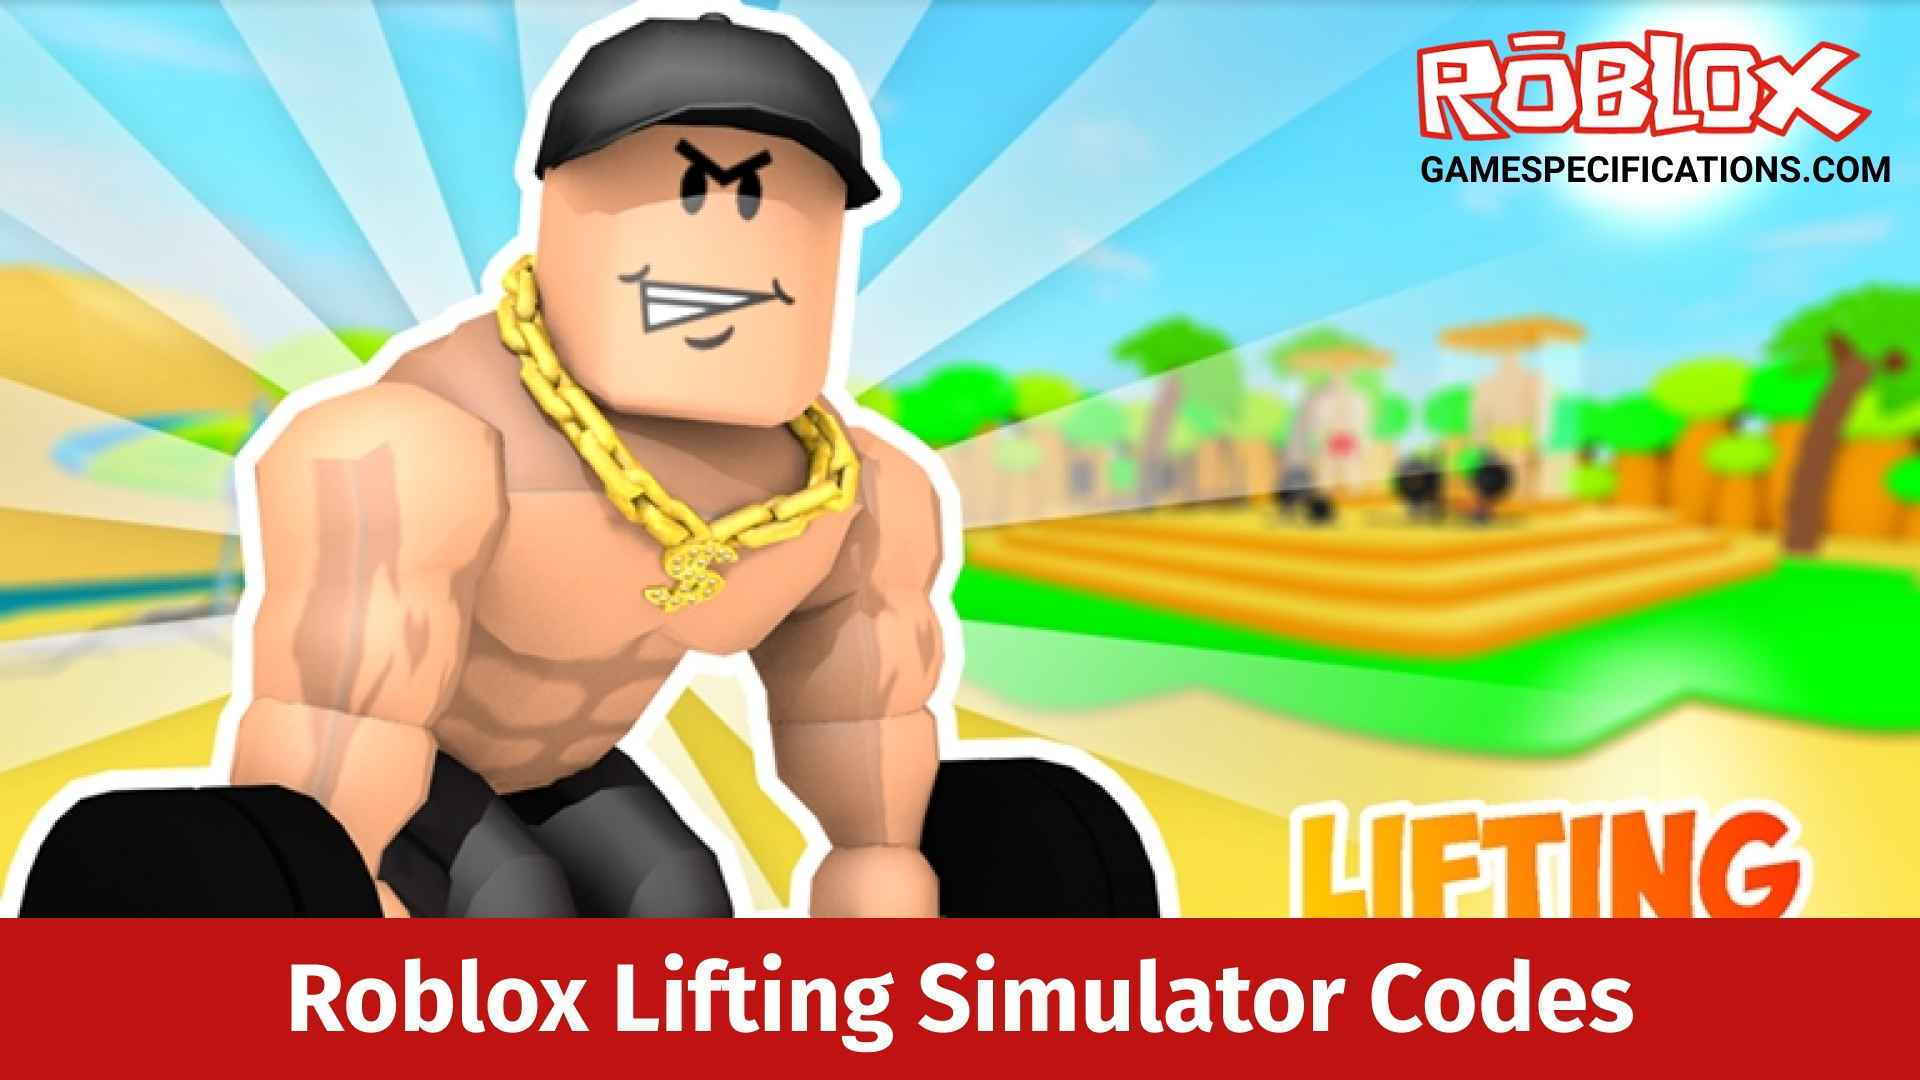 Roblox Lifting Simulator Codes July 2021 Game Specifications - codes for roblox lifting simulator 3